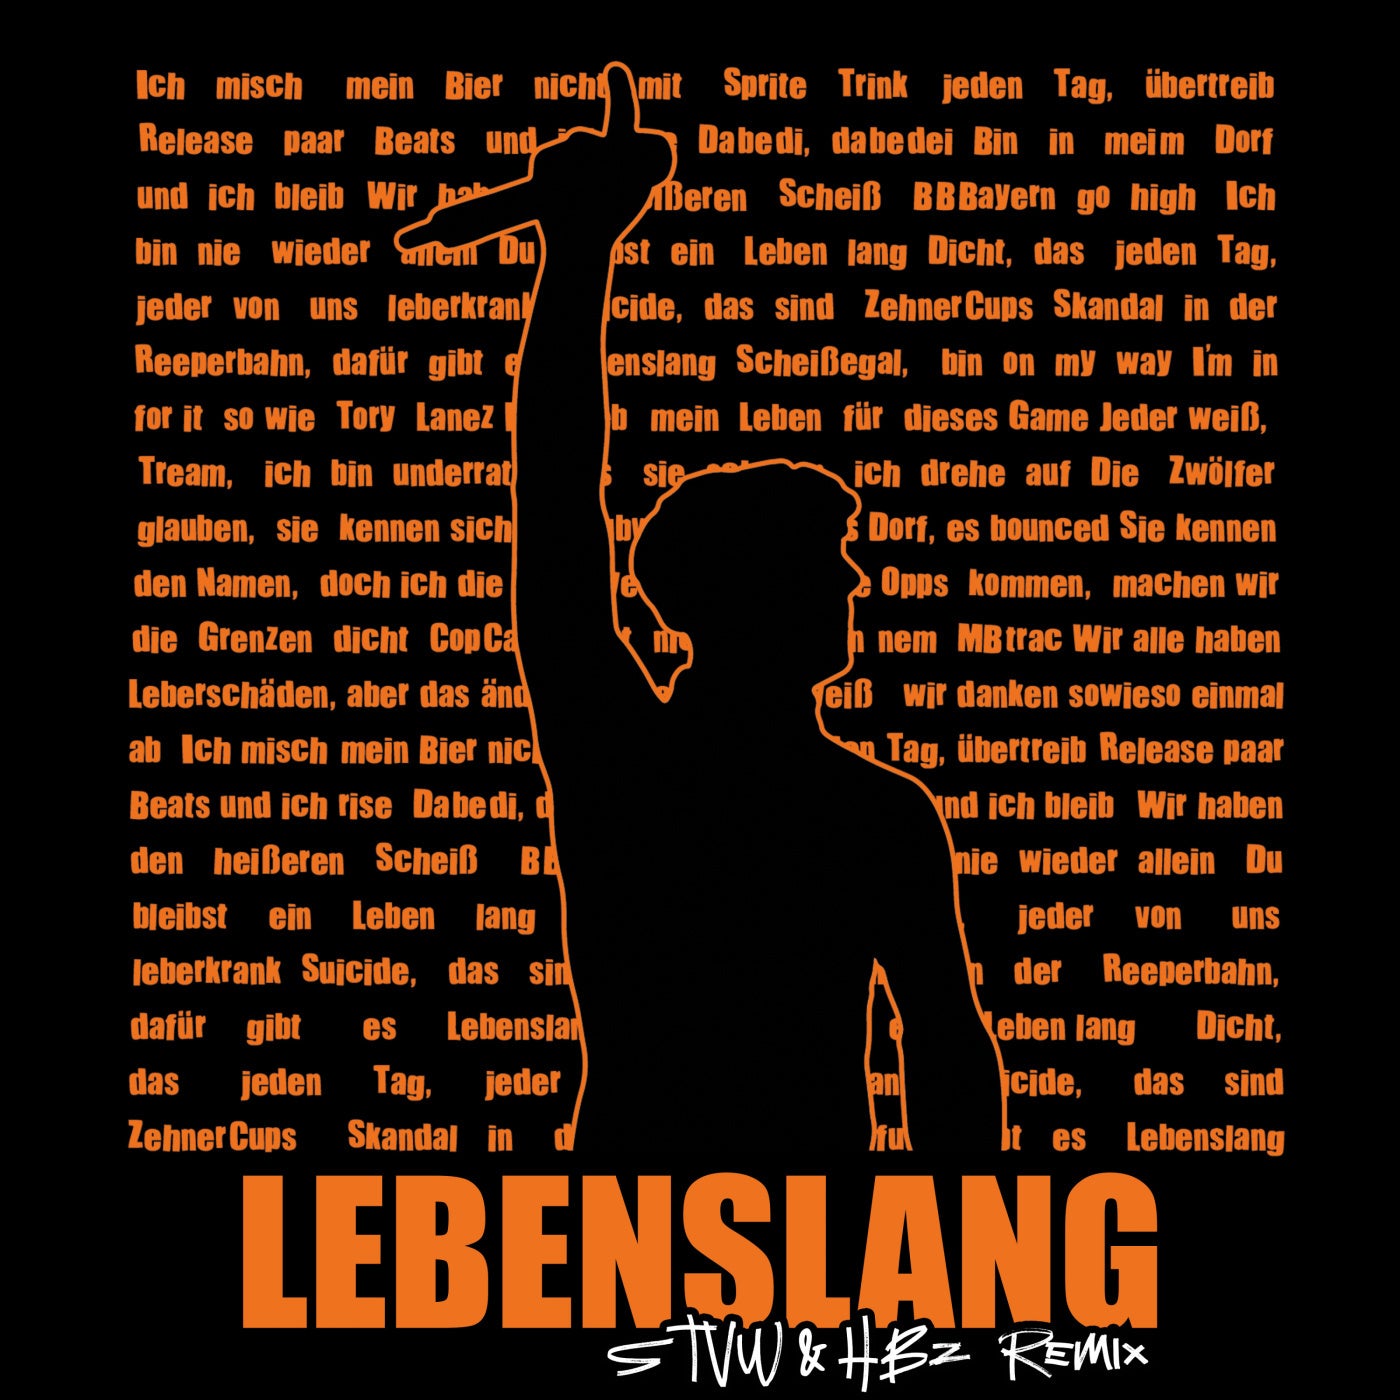 LEBENSLANG (STVW & HBz Remix)